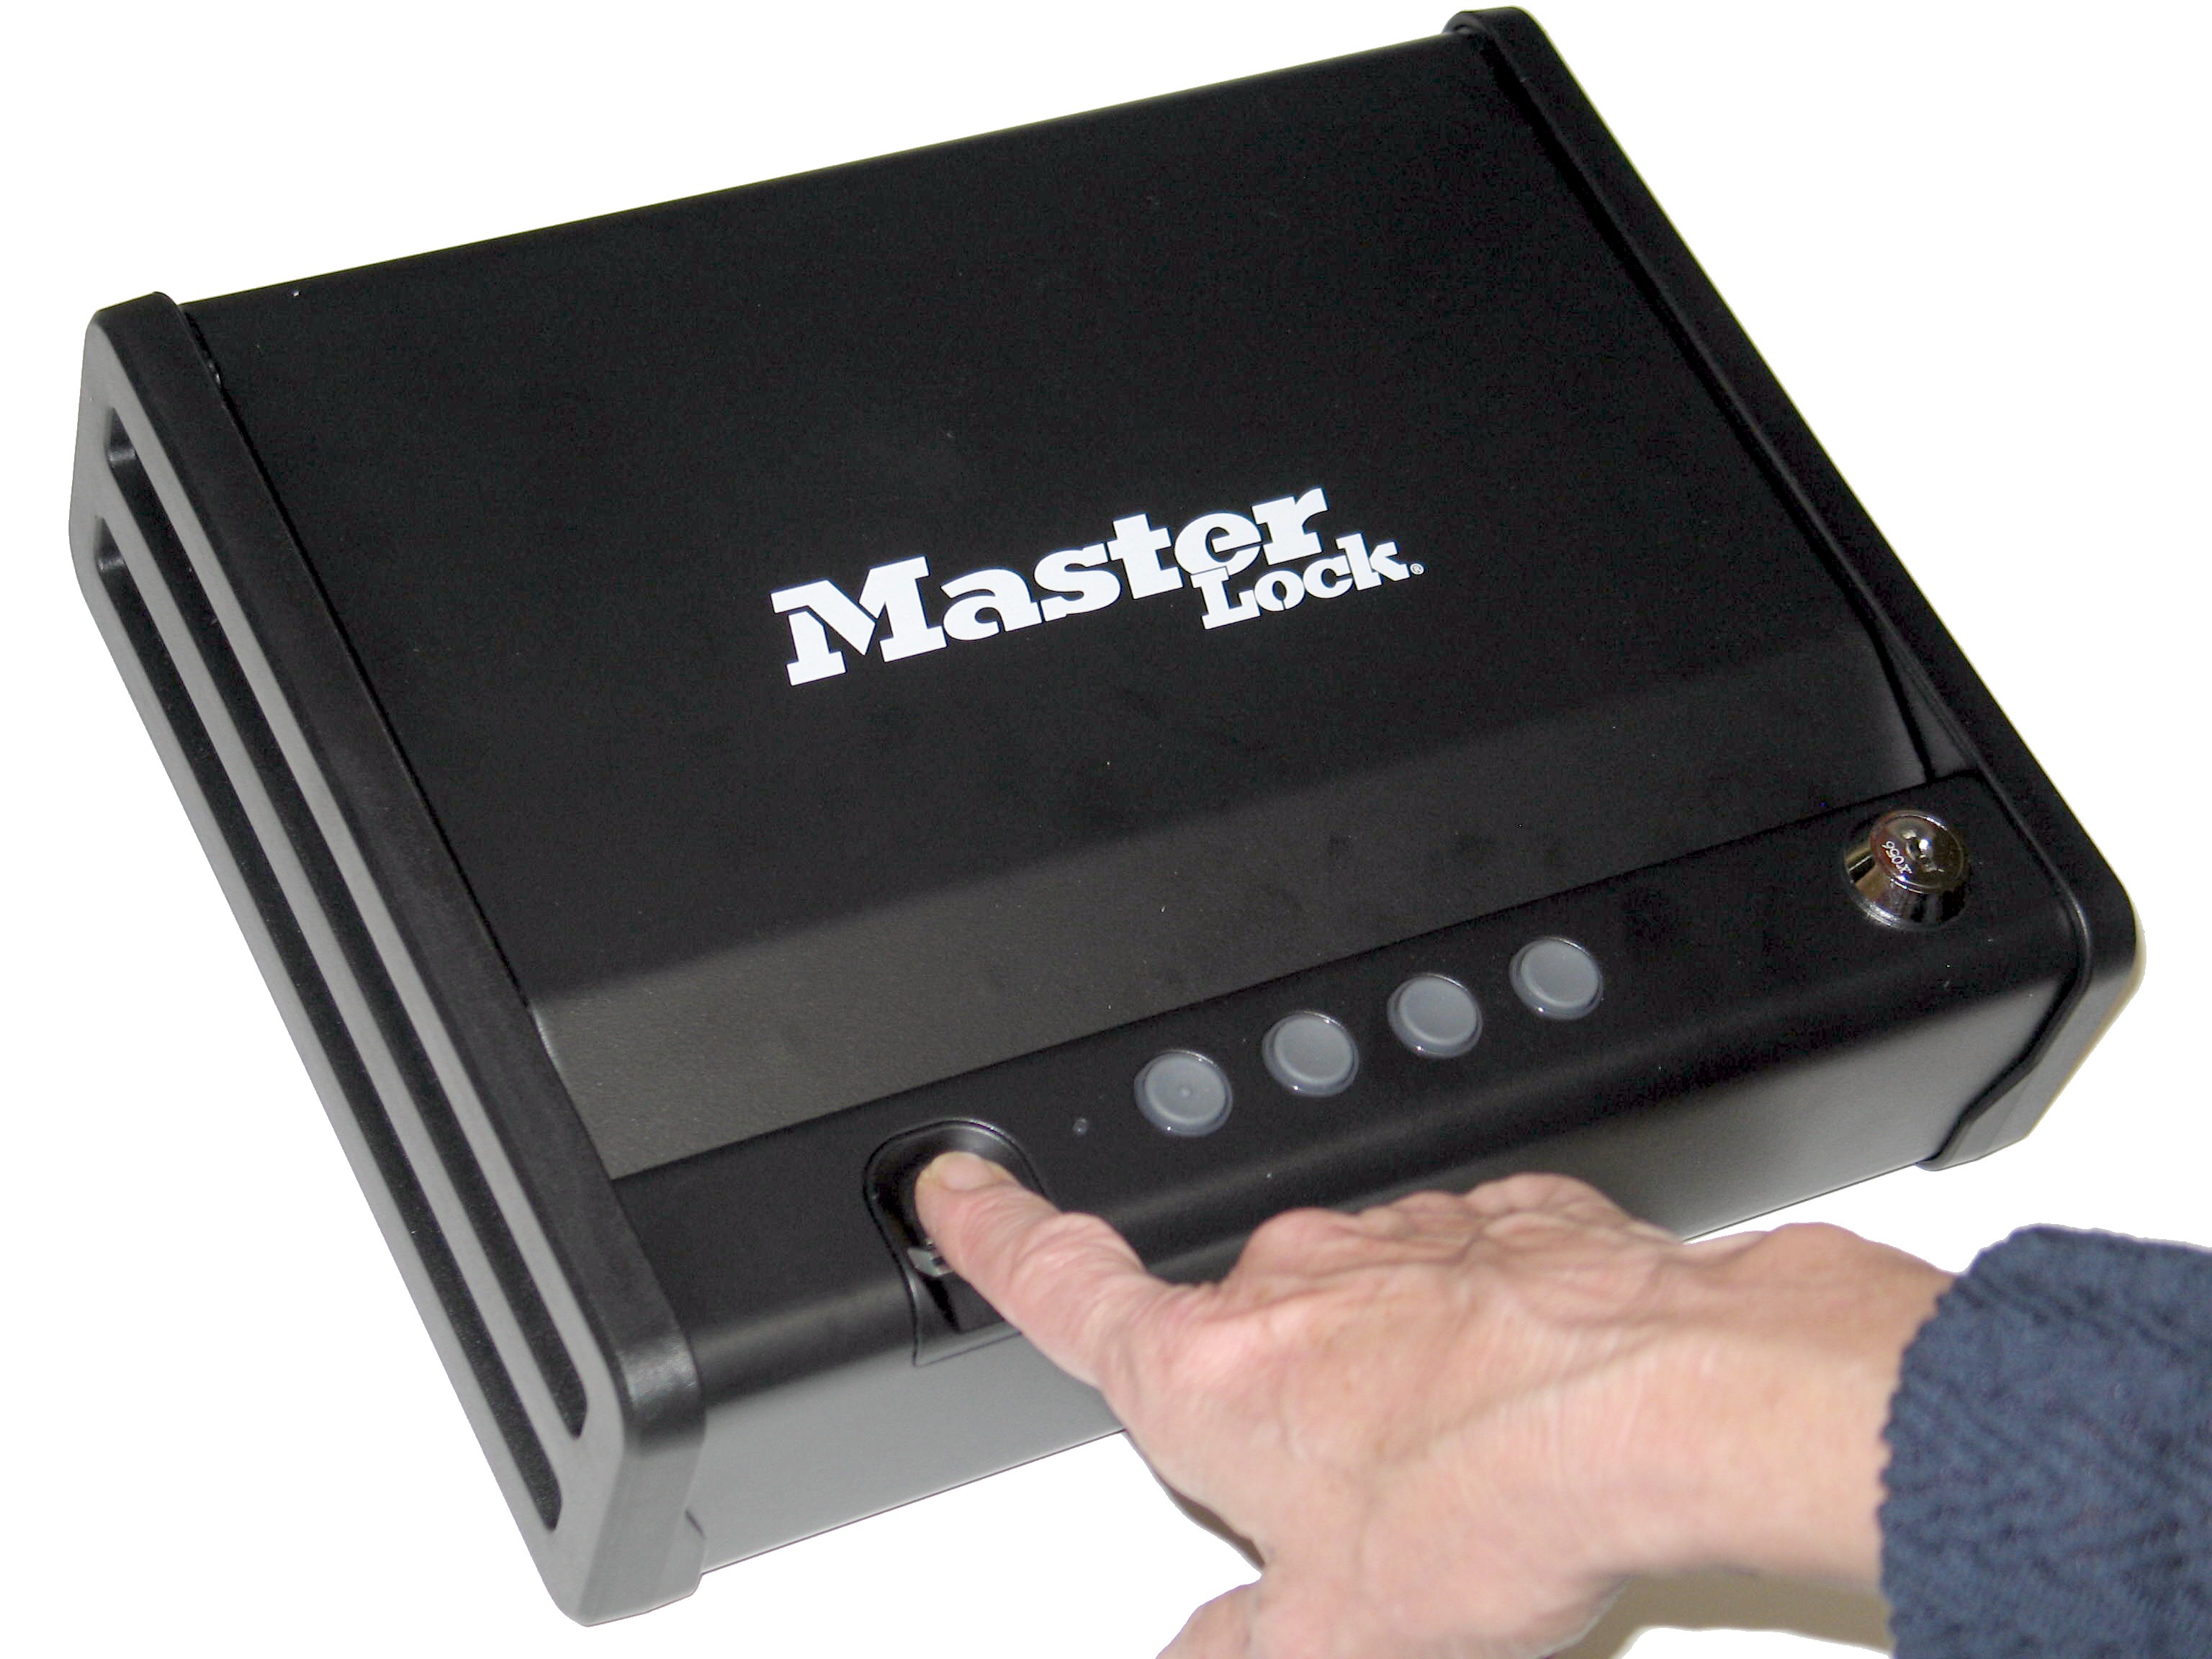 Master Lock cassetta di sicurezza Compact apertura biometrica 24.6x17x5.6cm, con cavetto in acciaio x fissaggio a muro 